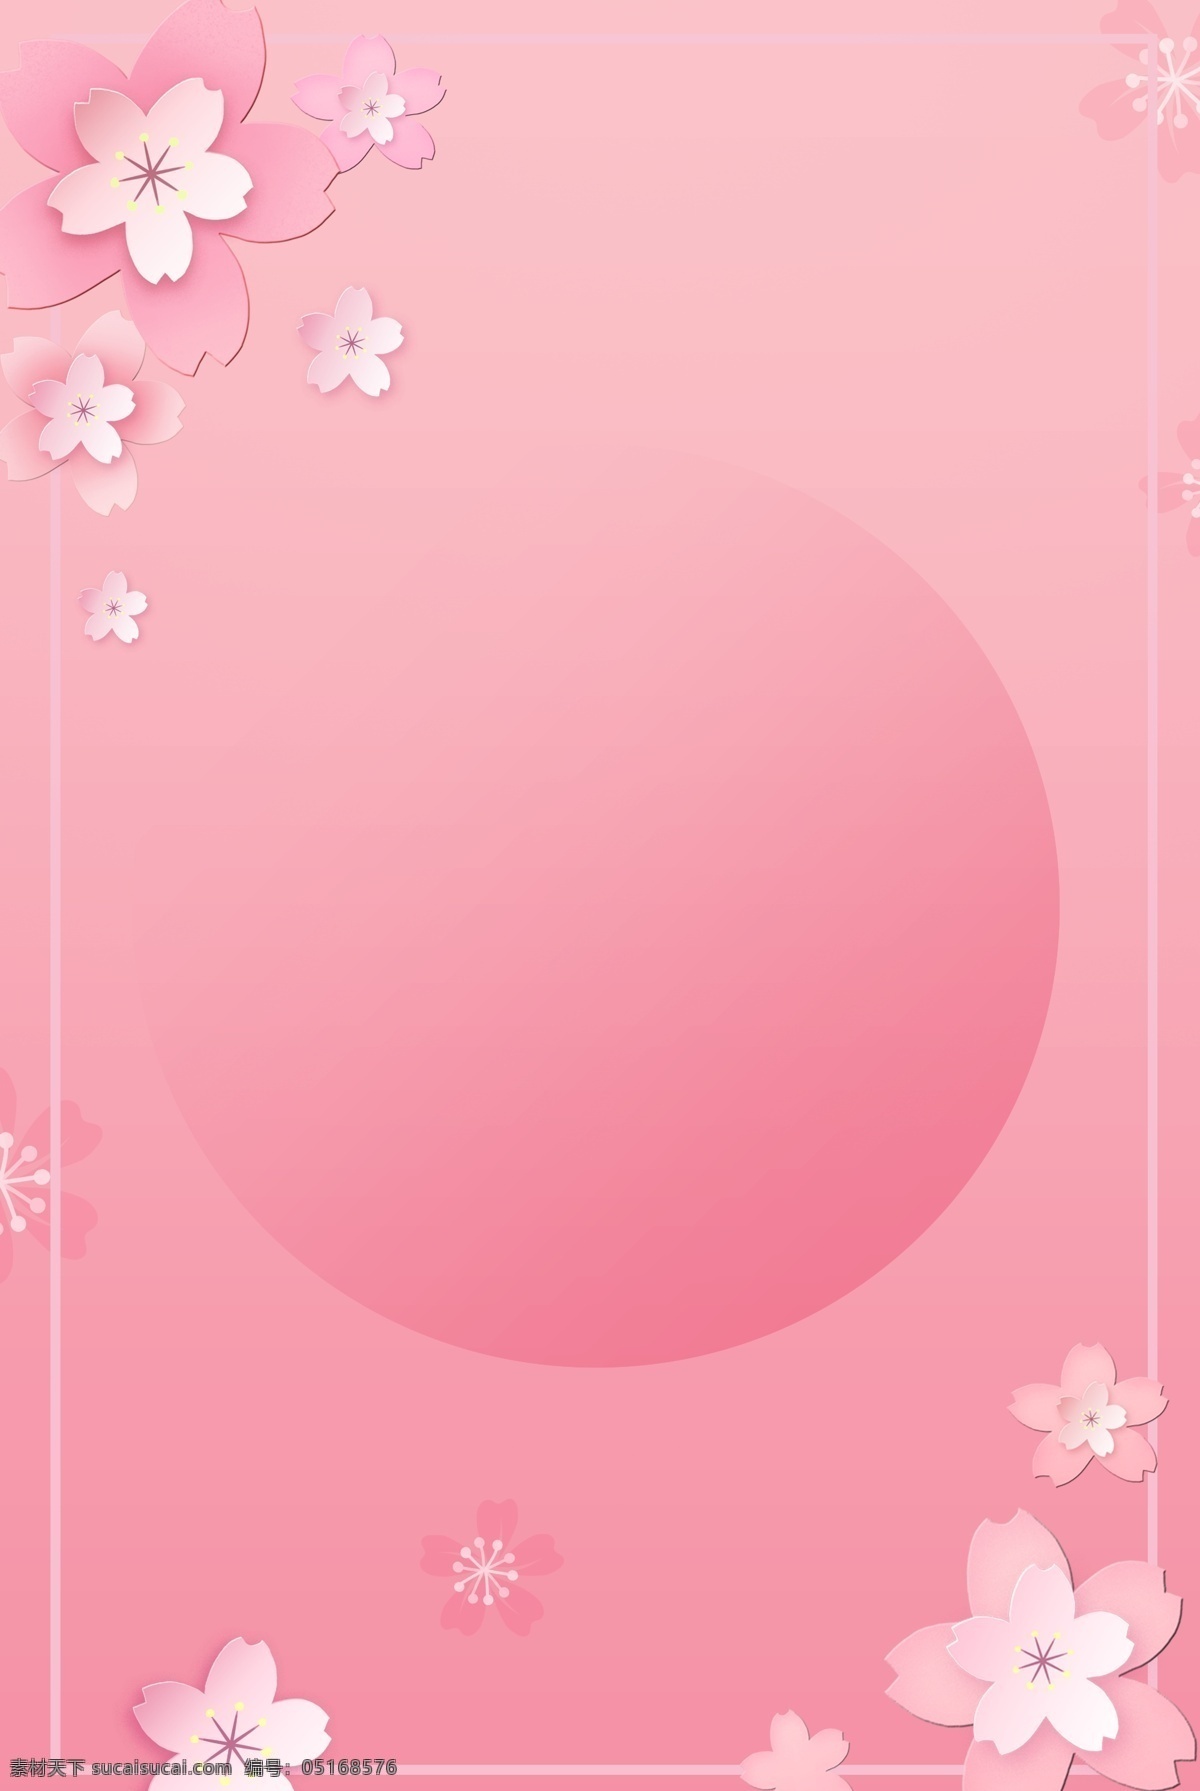 春季 清新 桃花 粉 背景 粉色 简约 唯美 春季上新 春天 淡雅 桃花背景 桃花素材